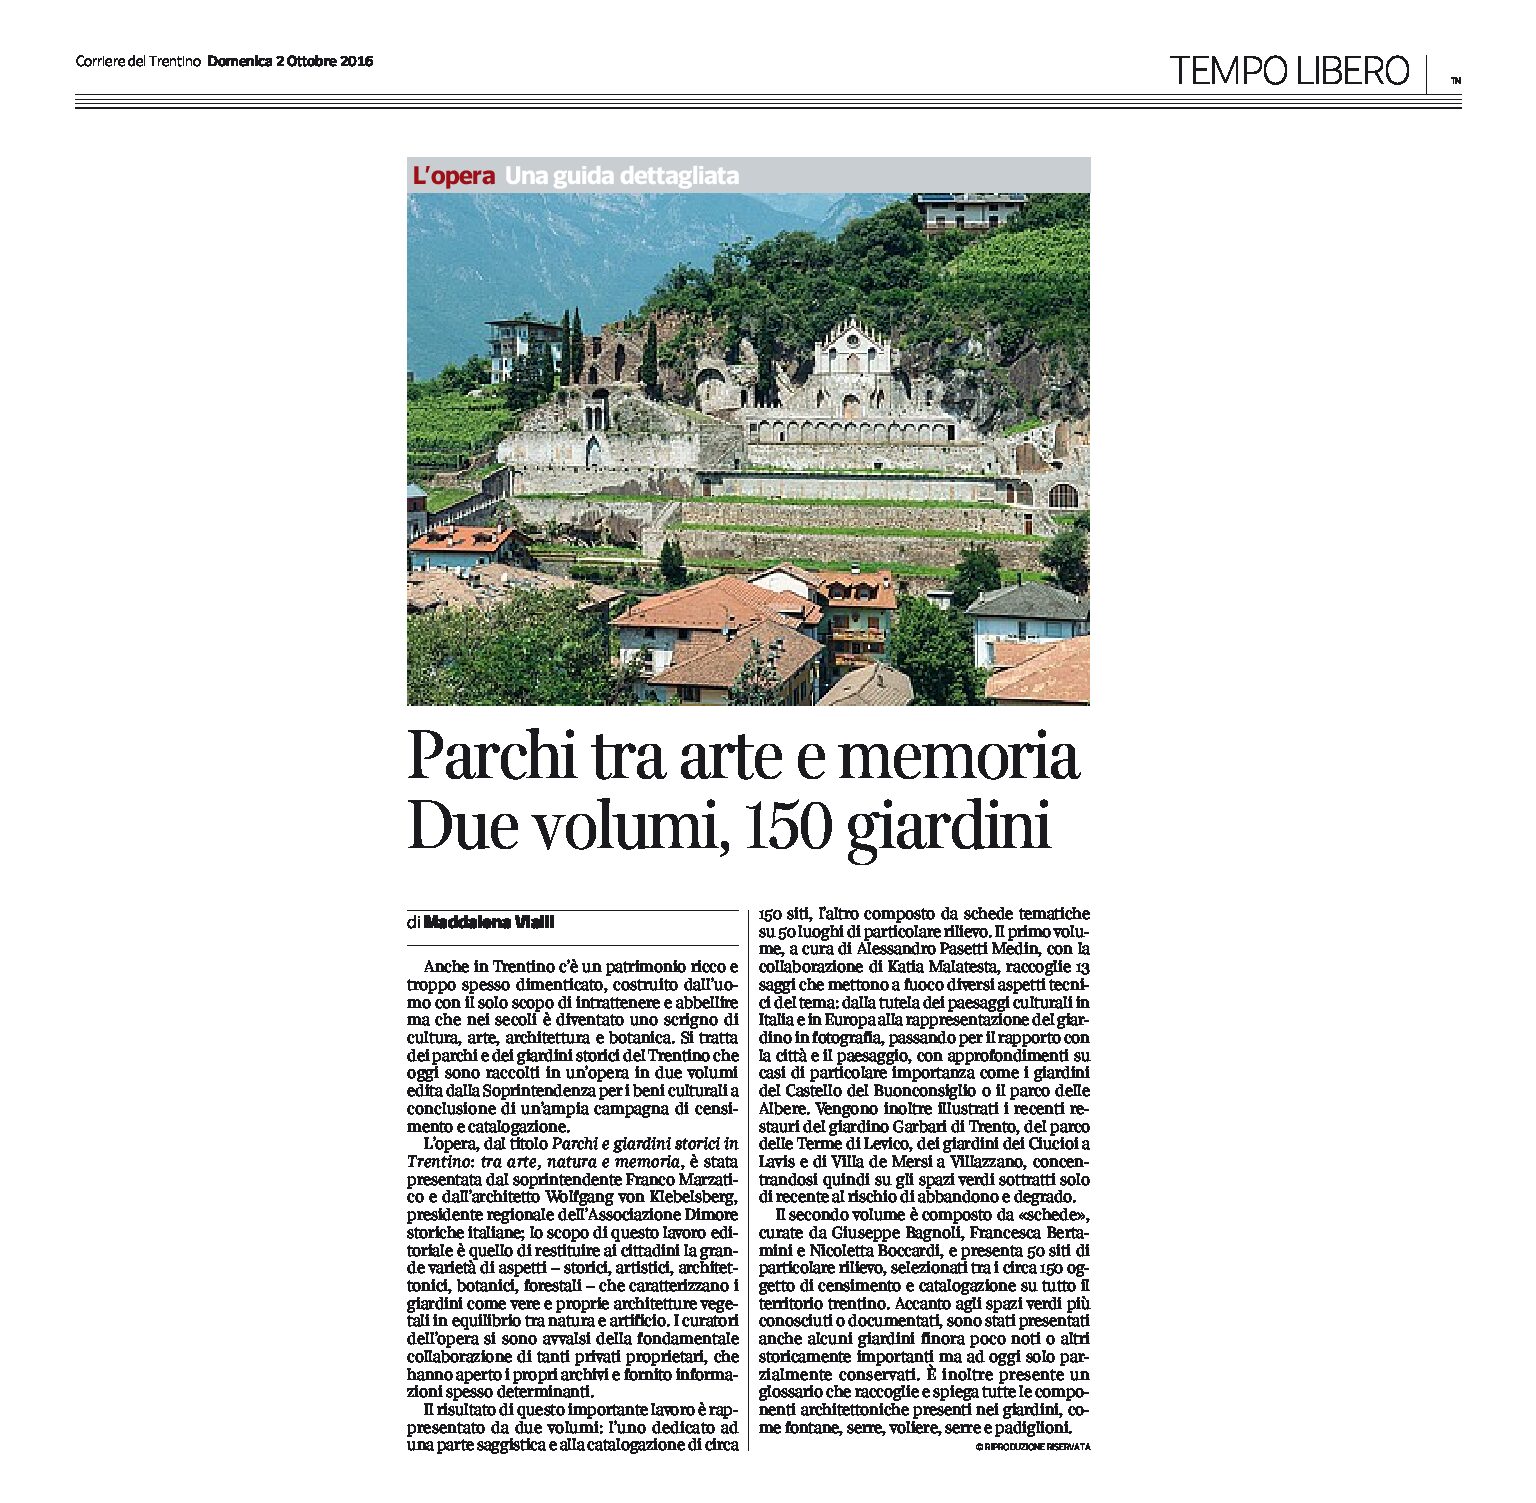 Trentino: Parchi tra arte e memoria. Due volumi, 150 giardini